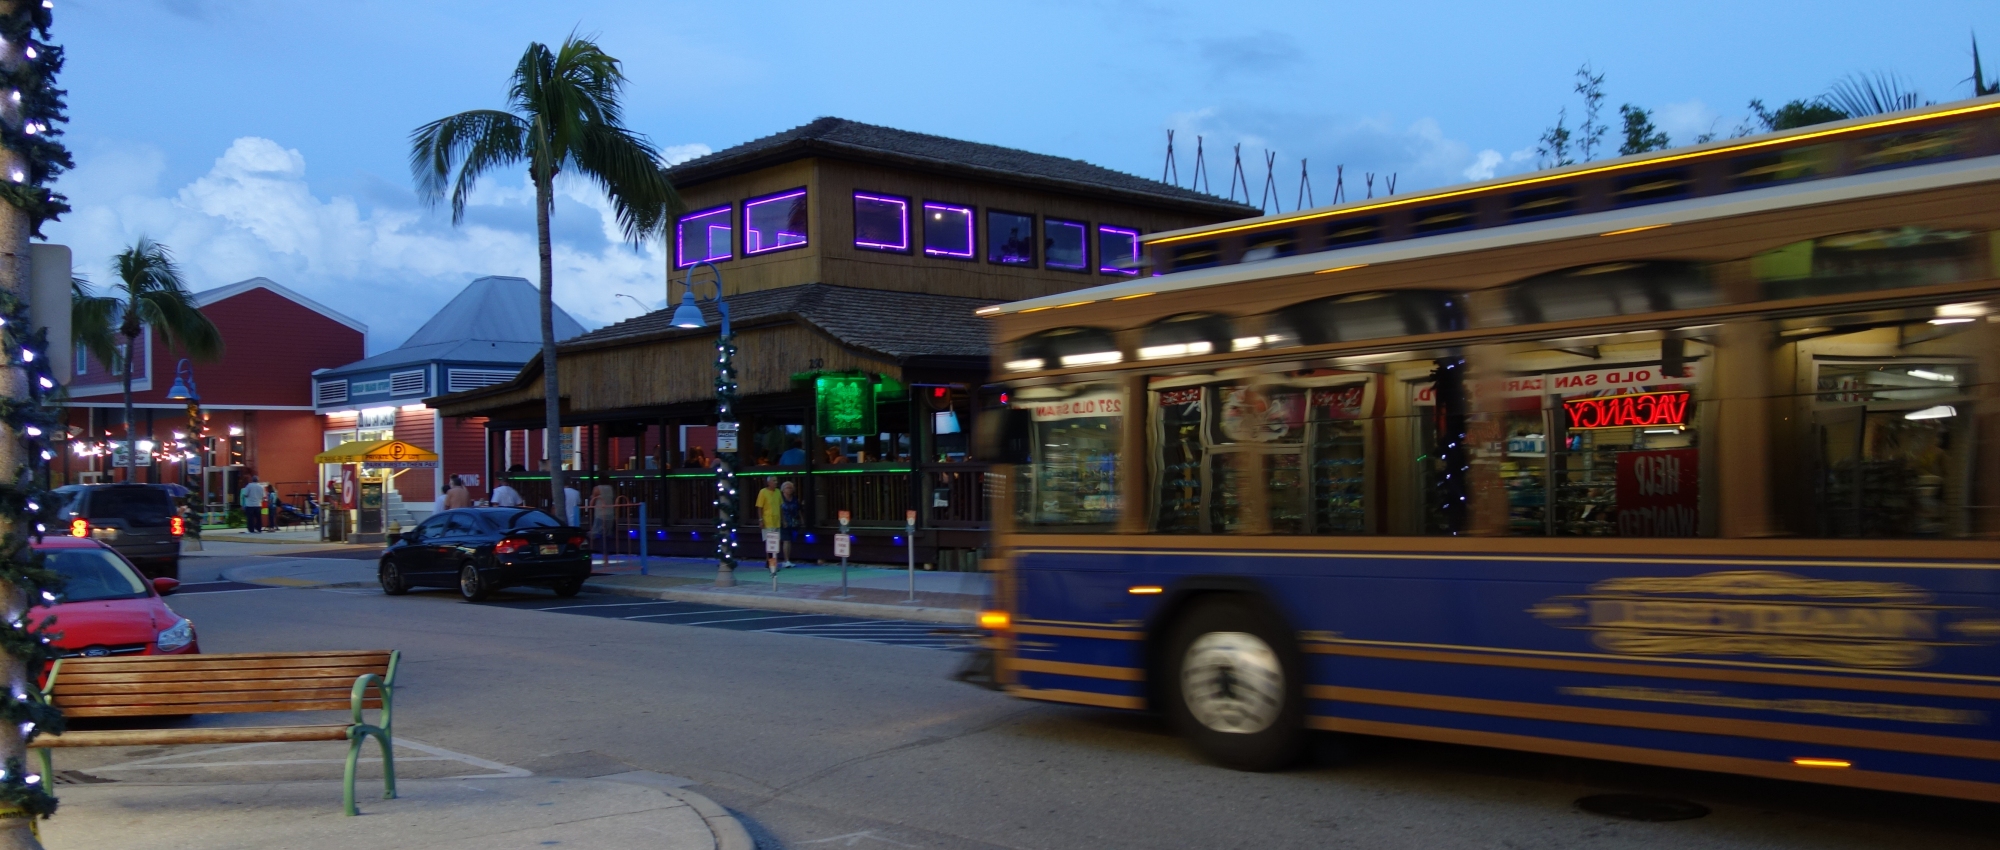 Fort Myers Beach Trolley Bus Mit Nutzlichen Tipps Fur Touristen